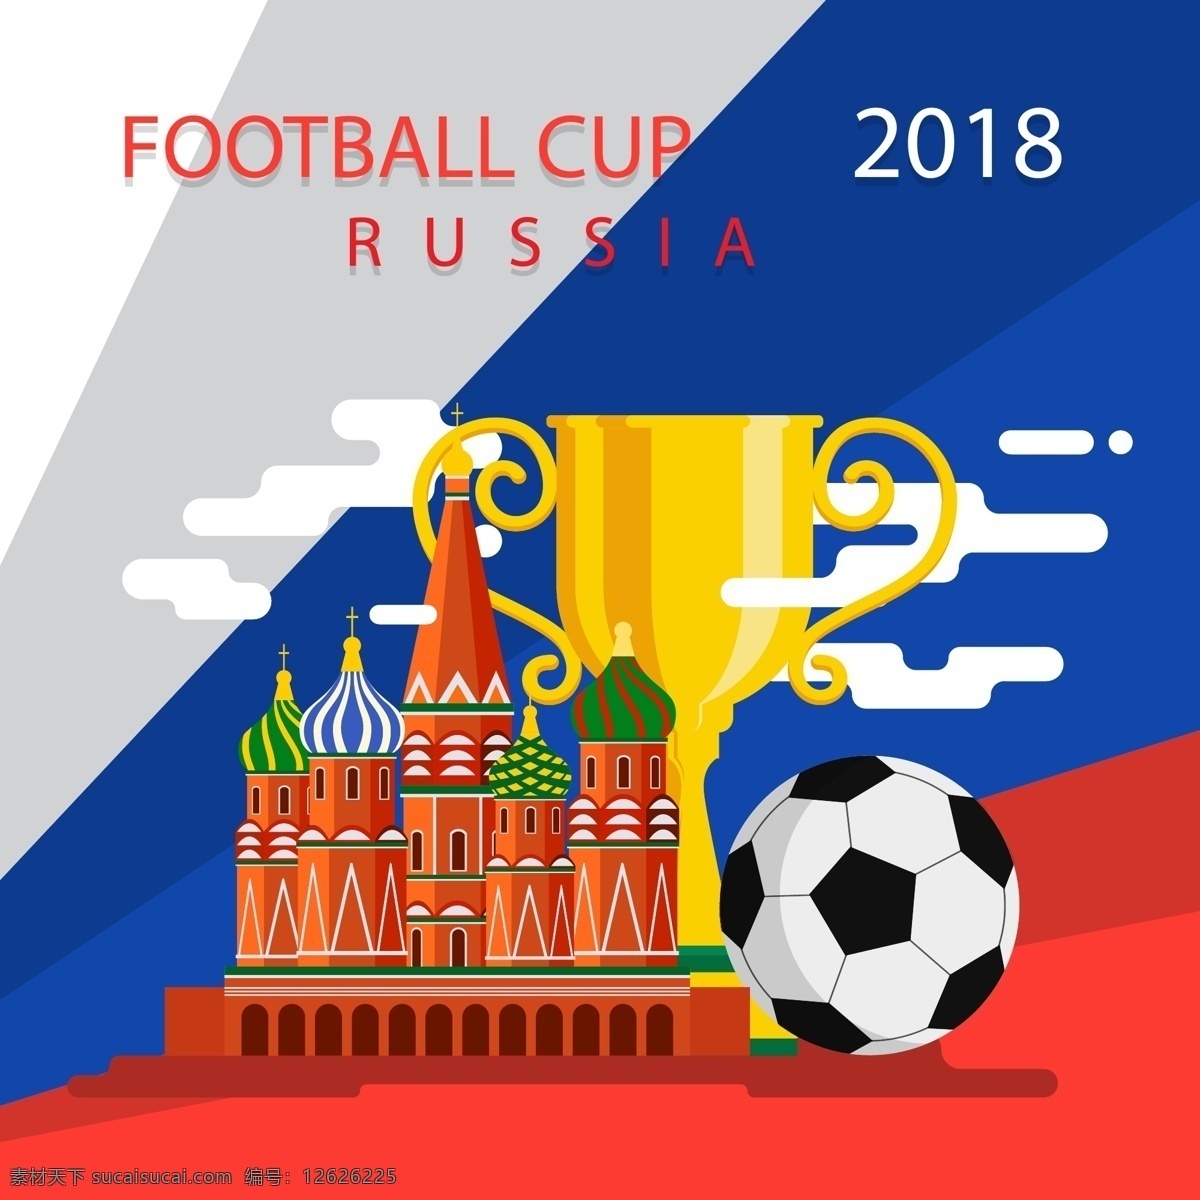 扁平 卡通 世界杯 足球 元素 奖杯 金色 矢量素材 比赛 体育 竞赛 2018 俄罗斯 欧洲杯